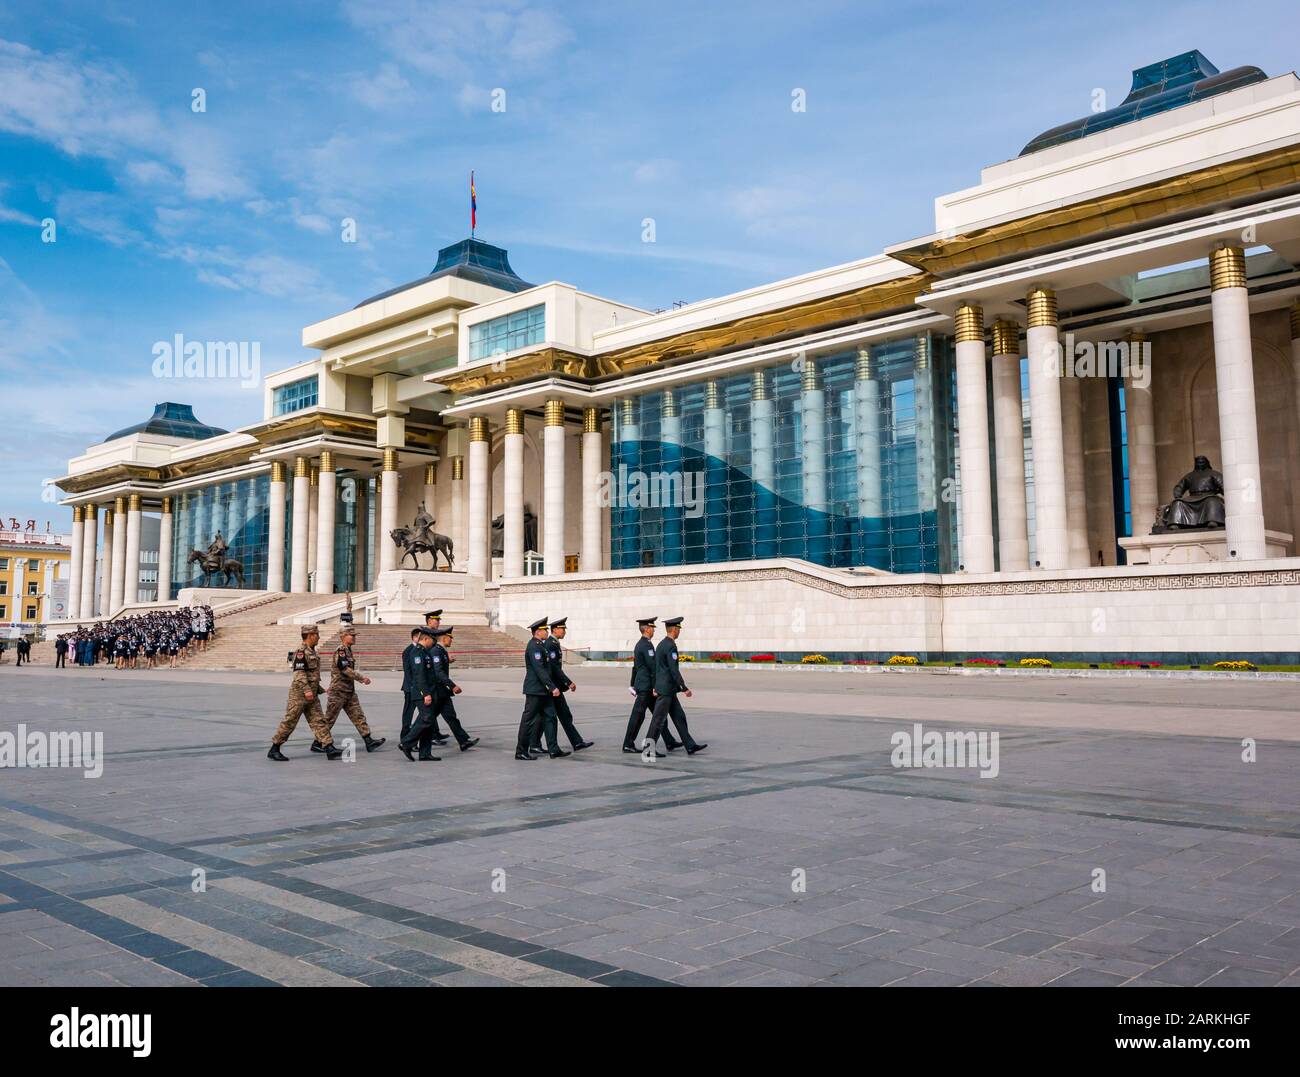 Mujeres policías en ceremonia en el Palacio de Gobierno con oficiales militares, en la plaza Sükhbaatar, Ulaanbaatar, Mongolia Foto de stock